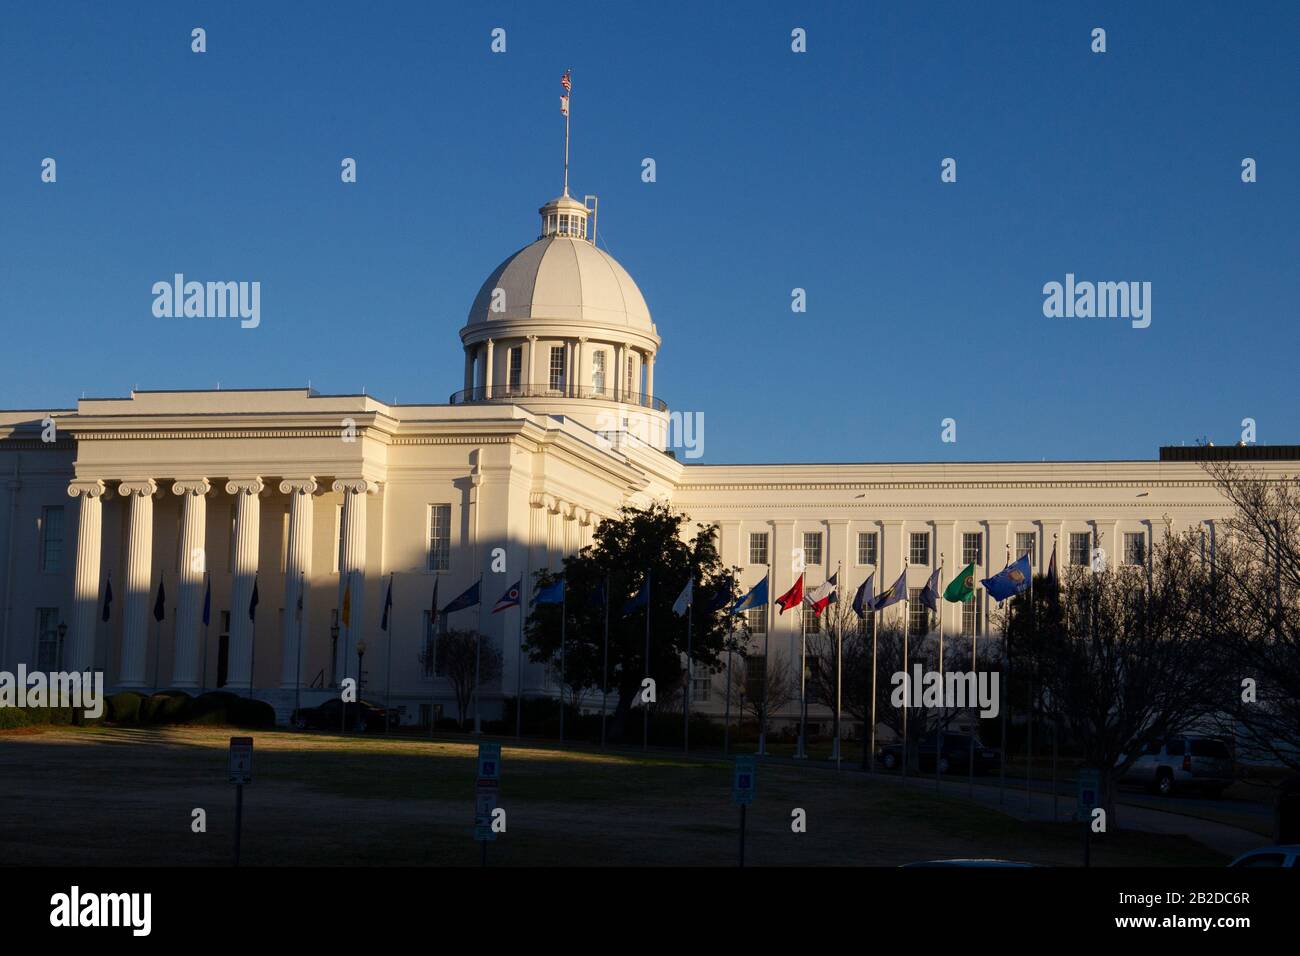 Das Alabama State Capitol Gebäude in Montgomery Alabama befindet sich auf dem Kapitol Hill, ursprünglich Goat Hill. Stockfoto